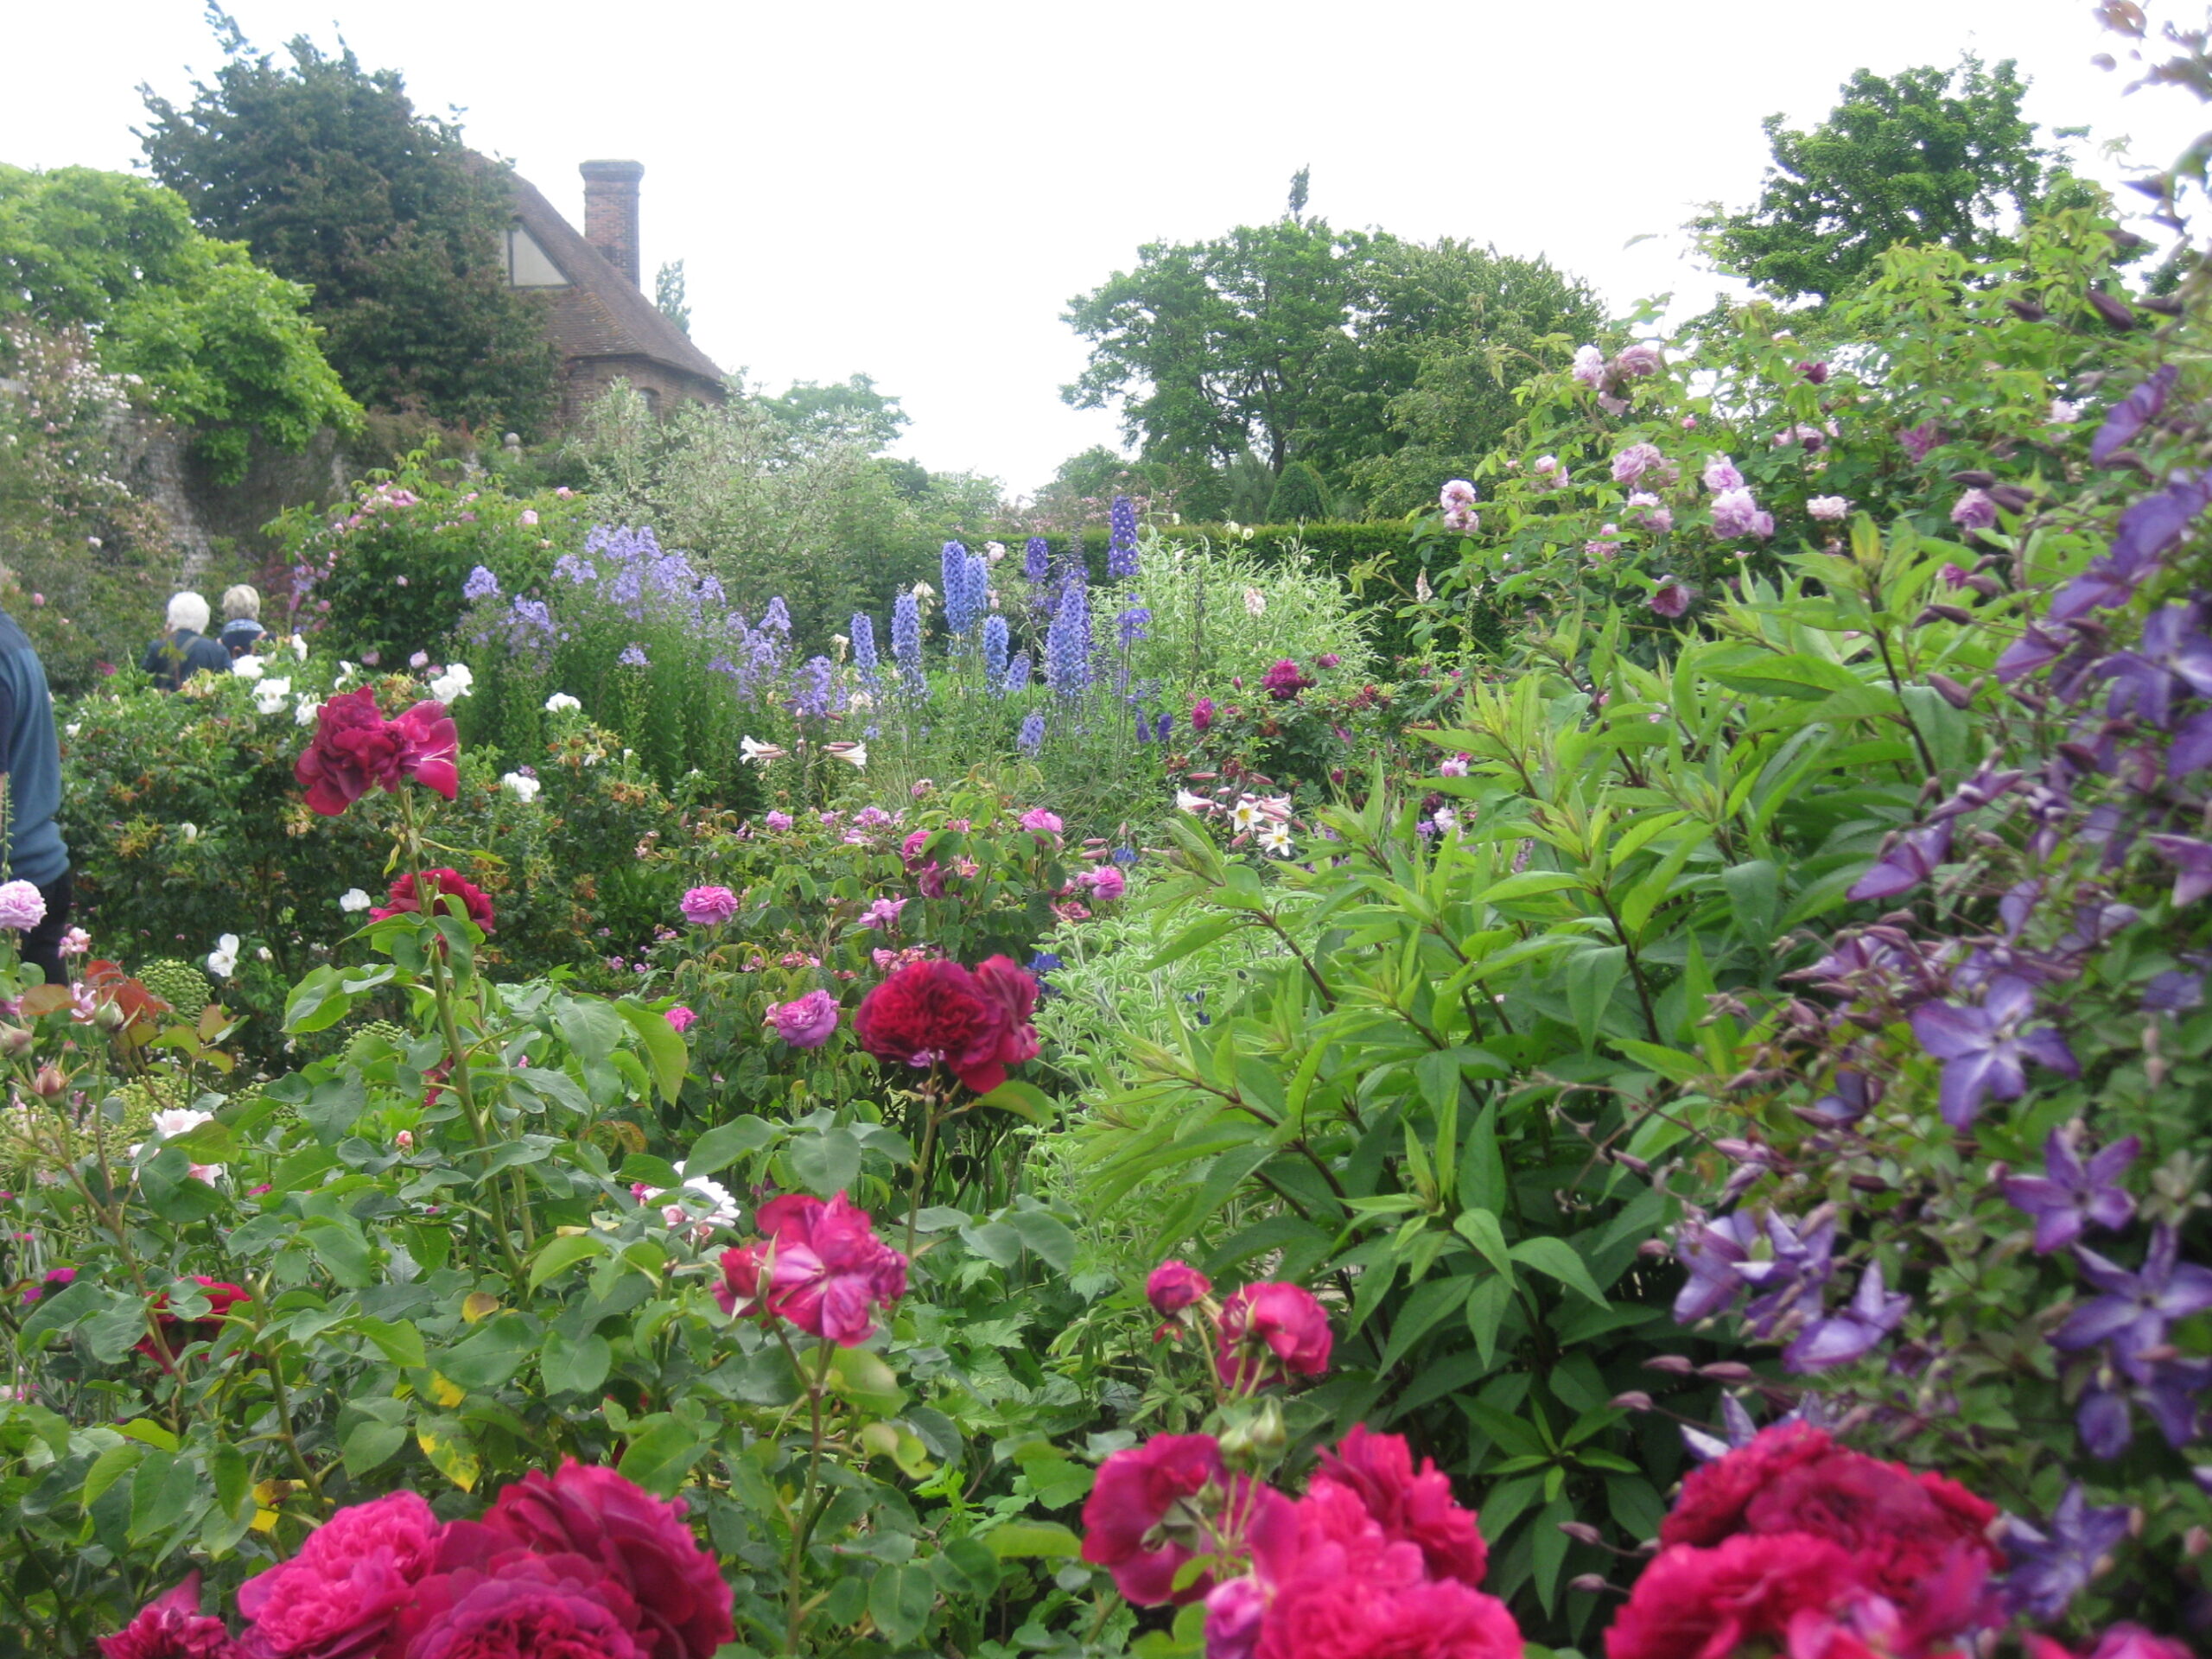 Sissinghurt rose garden (Susanne Osmond)